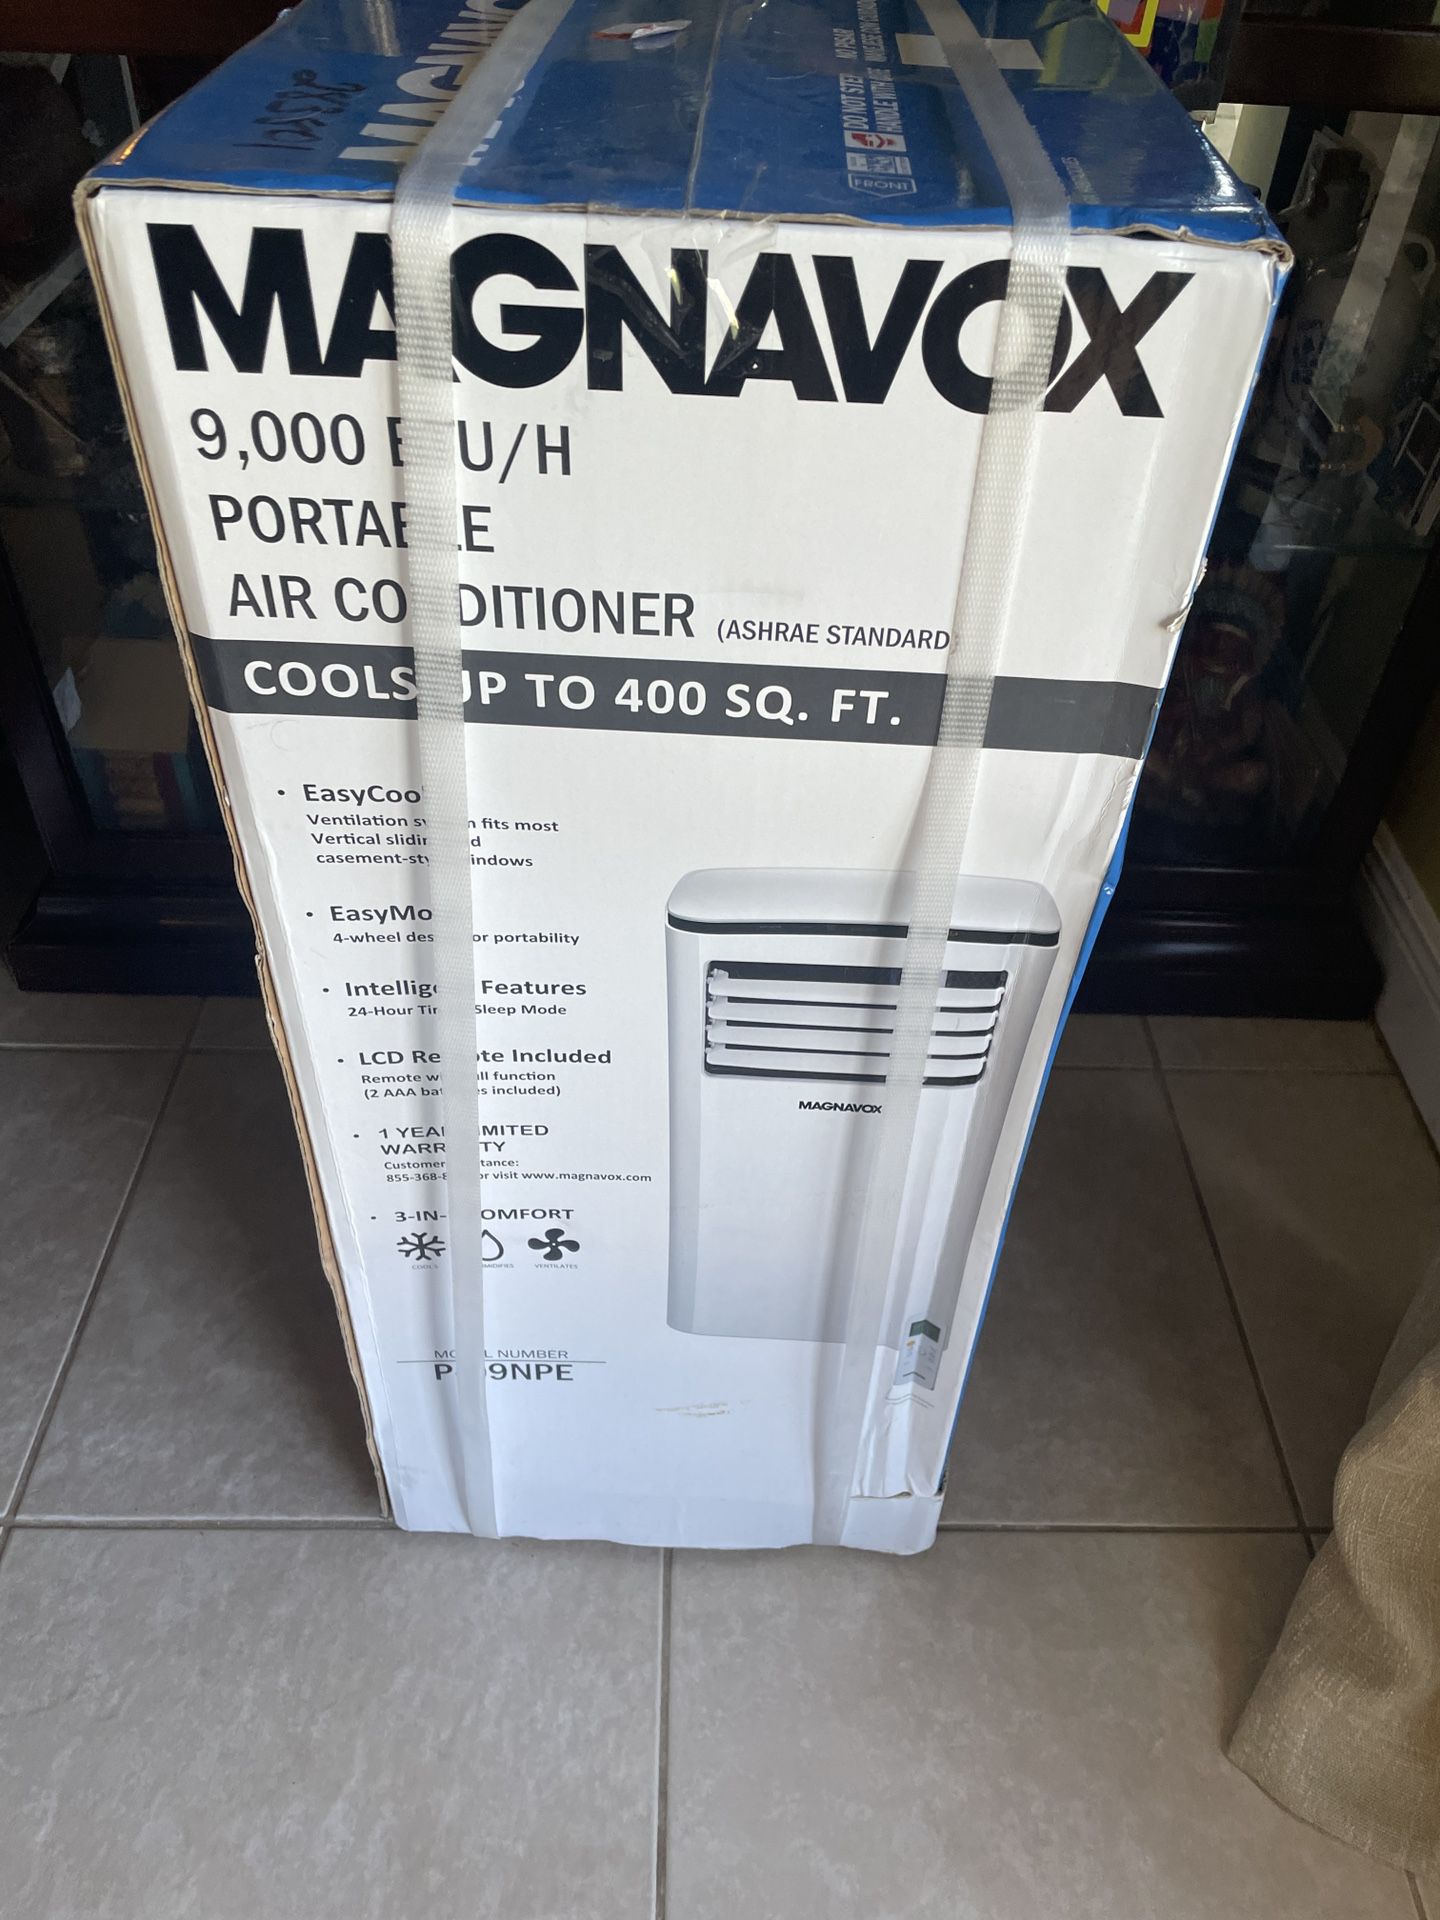 Magnavox 9,000 BTU/H Portable Air Conditioner 